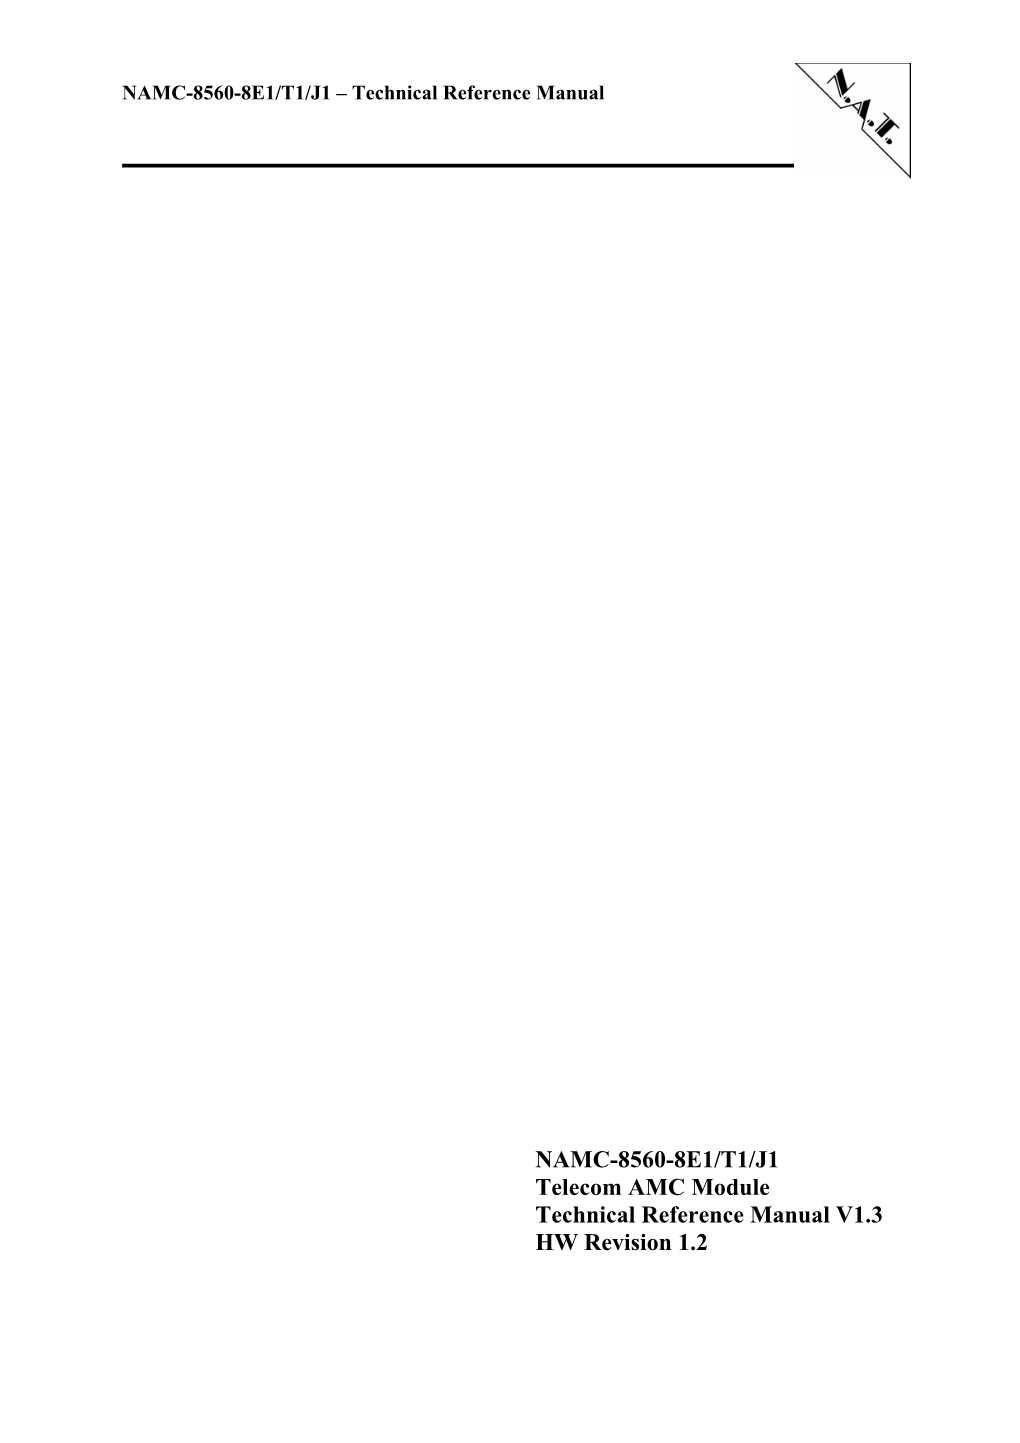 NAMC-8560-8E1/T1/J1 Telecom AMC Module Technical Reference Manual V1.3 HW Revision 1.2